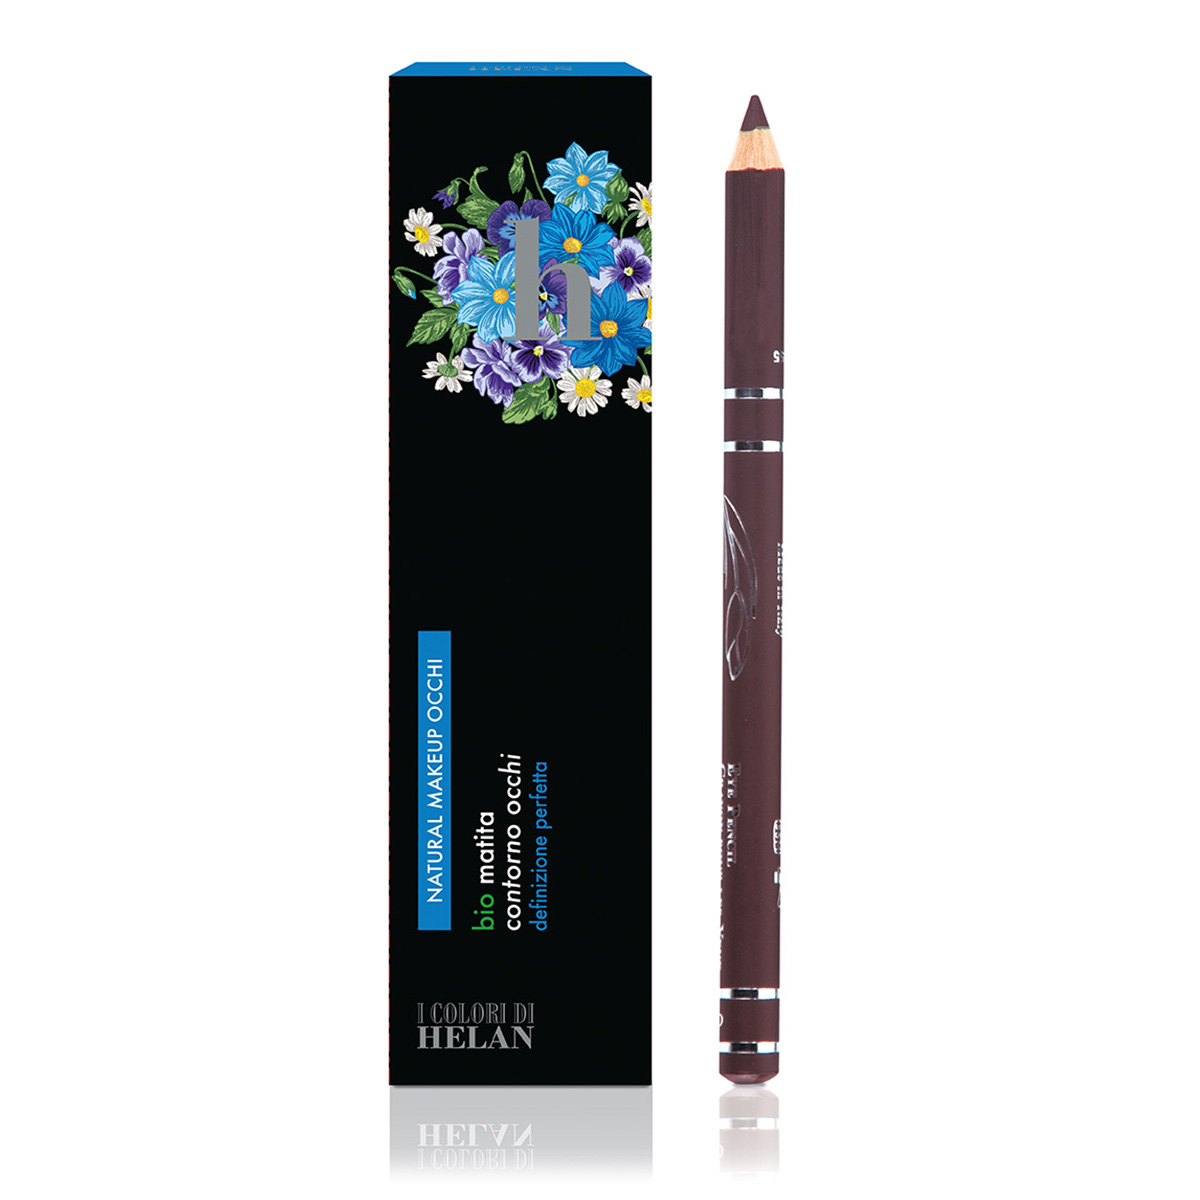 Bio Eyeliner Pencil